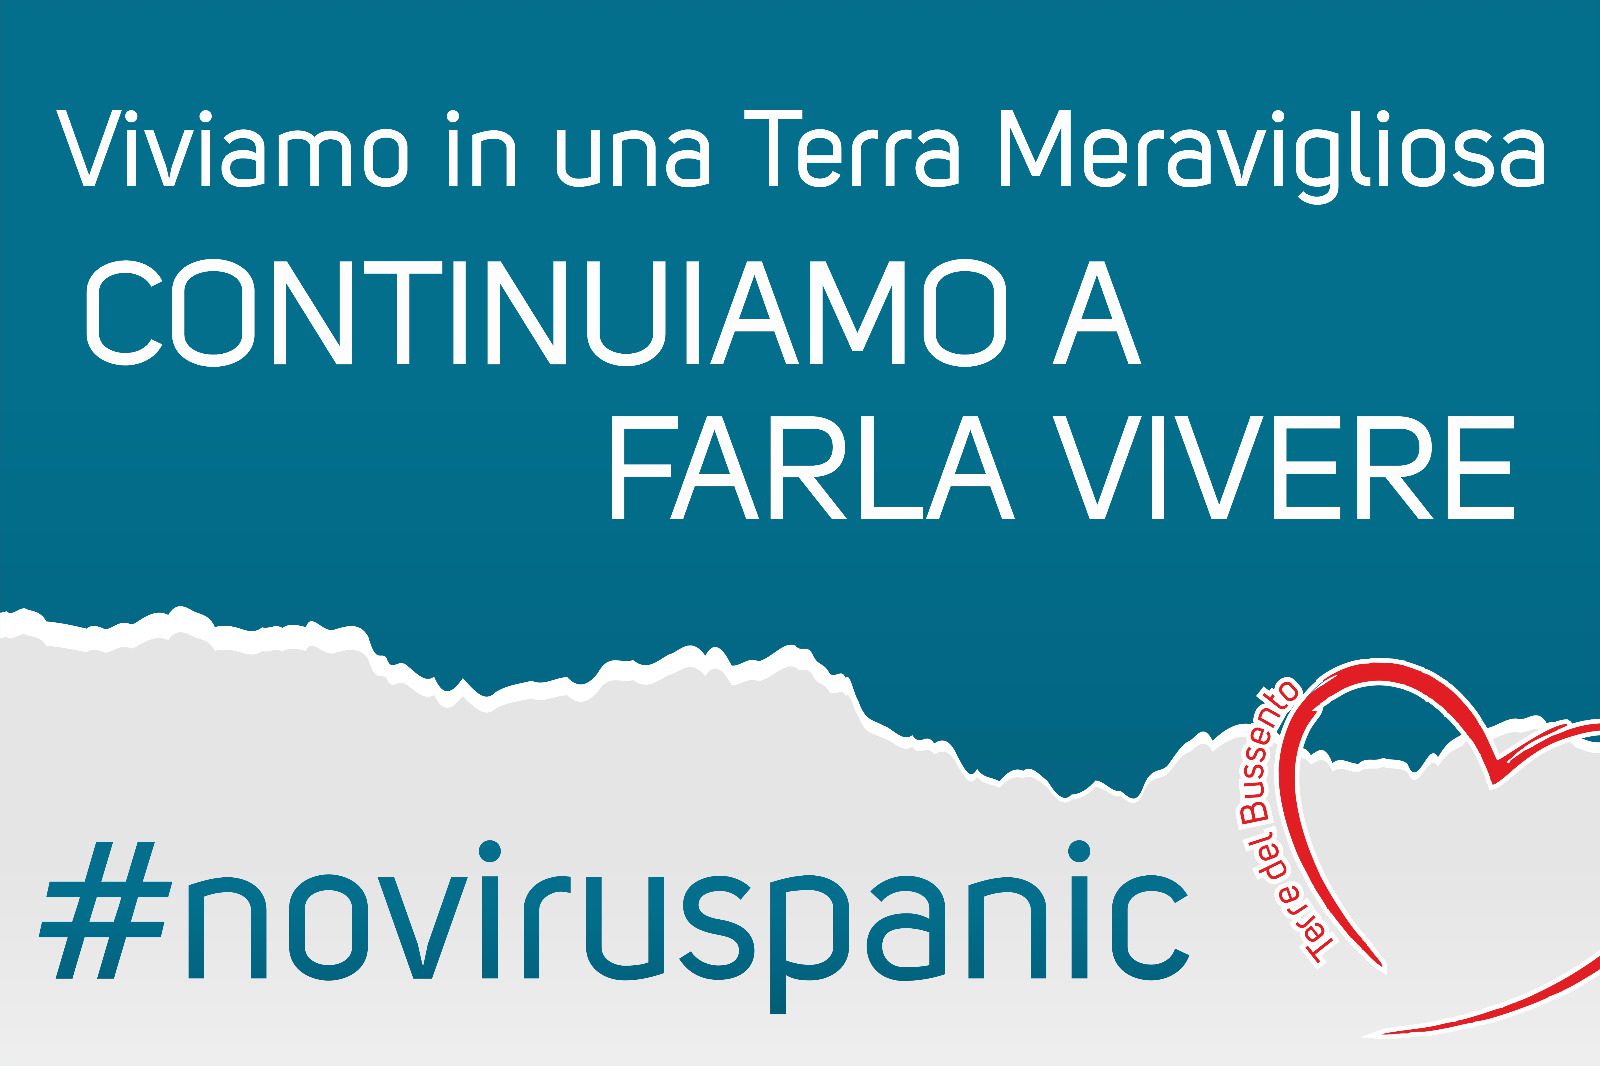 Cicas Sapri lancia l’hashtag #noviruspanic a favore delle aziende